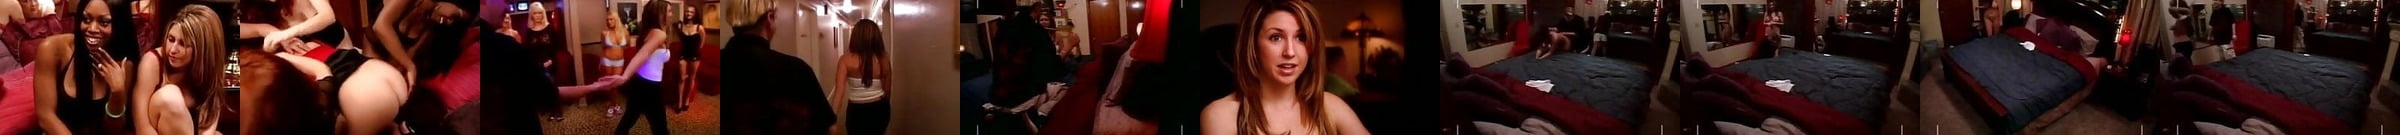 Die Empfohlen Porno Videos In Der Kategorie Freudenhaus